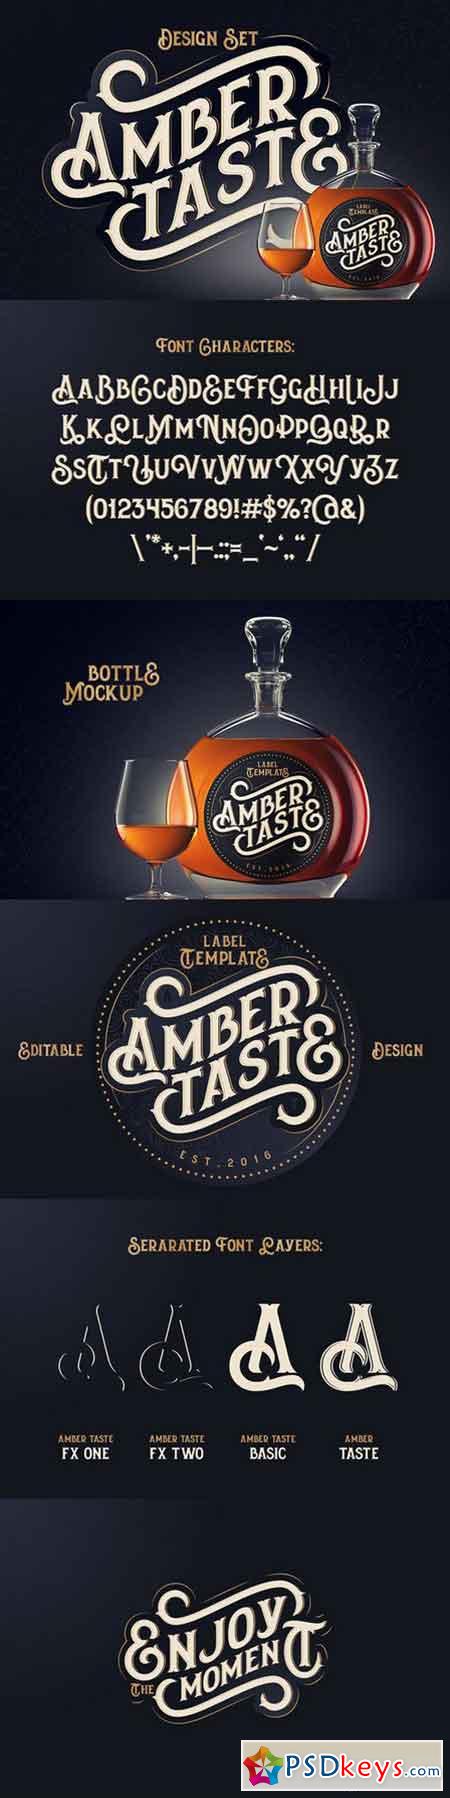 Amber Taste Font, Label, Mockup! 871031